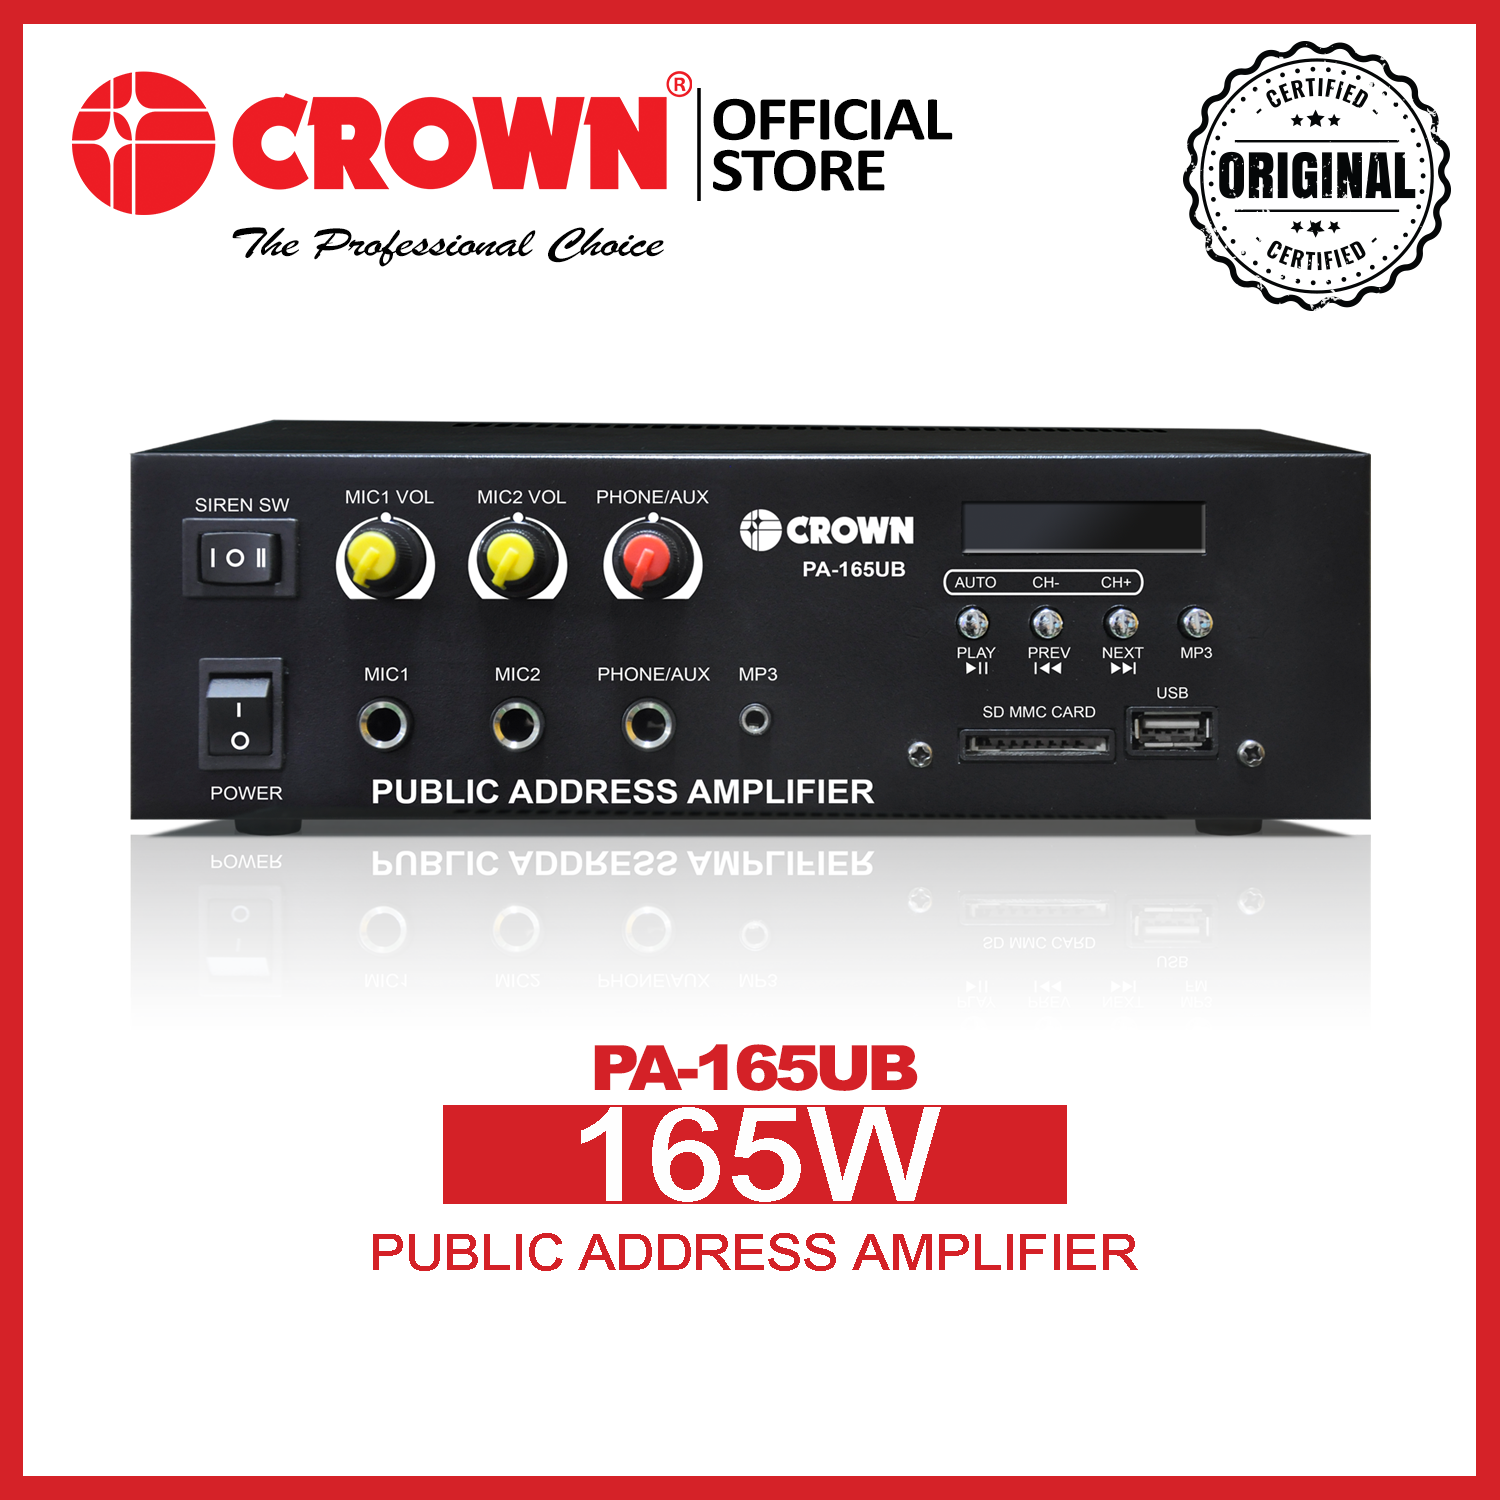 CROWN PA-165UB 165W Public Address Amplifier